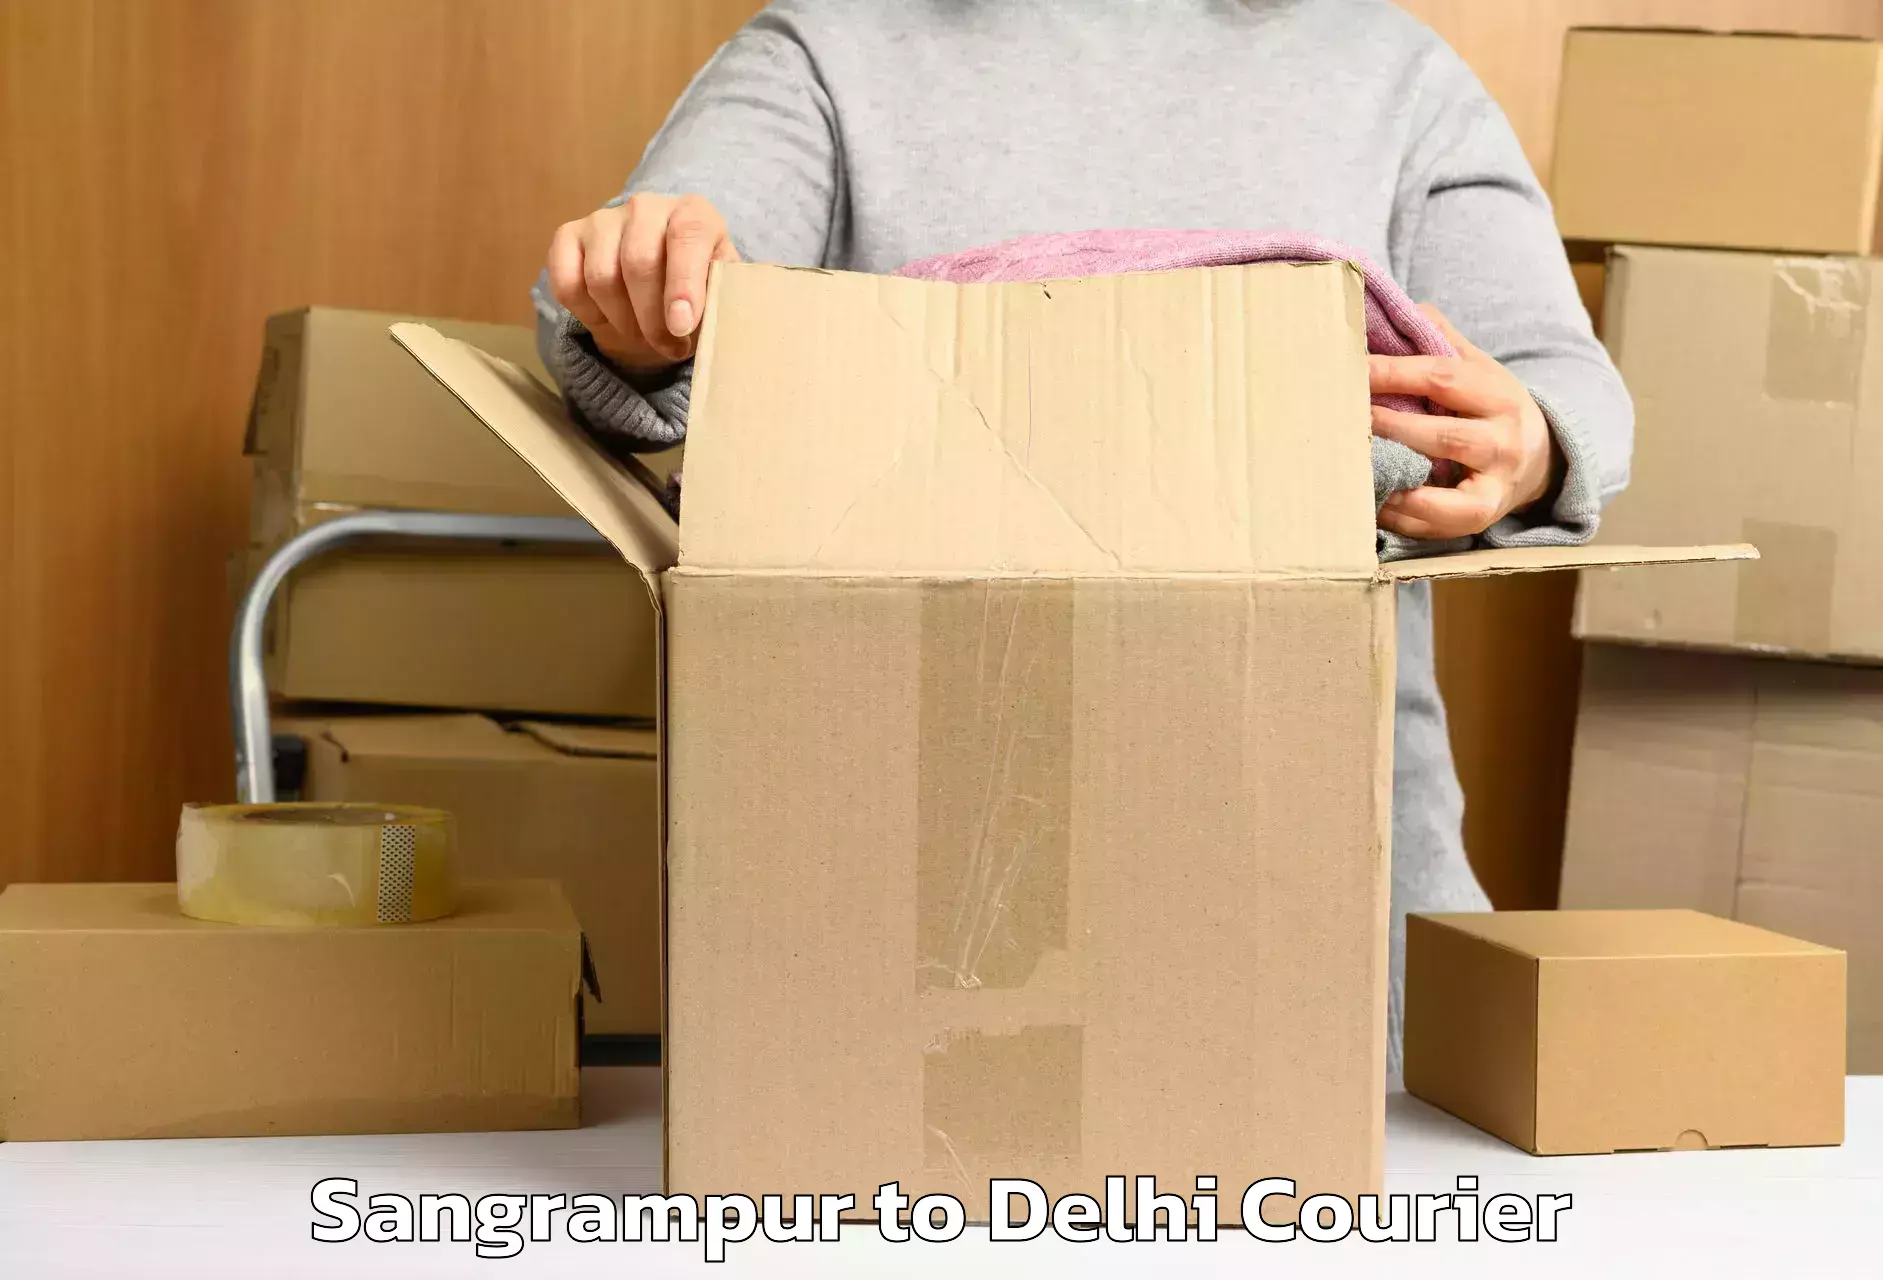 Baggage delivery optimization Sangrampur to Jamia Millia Islamia New Delhi